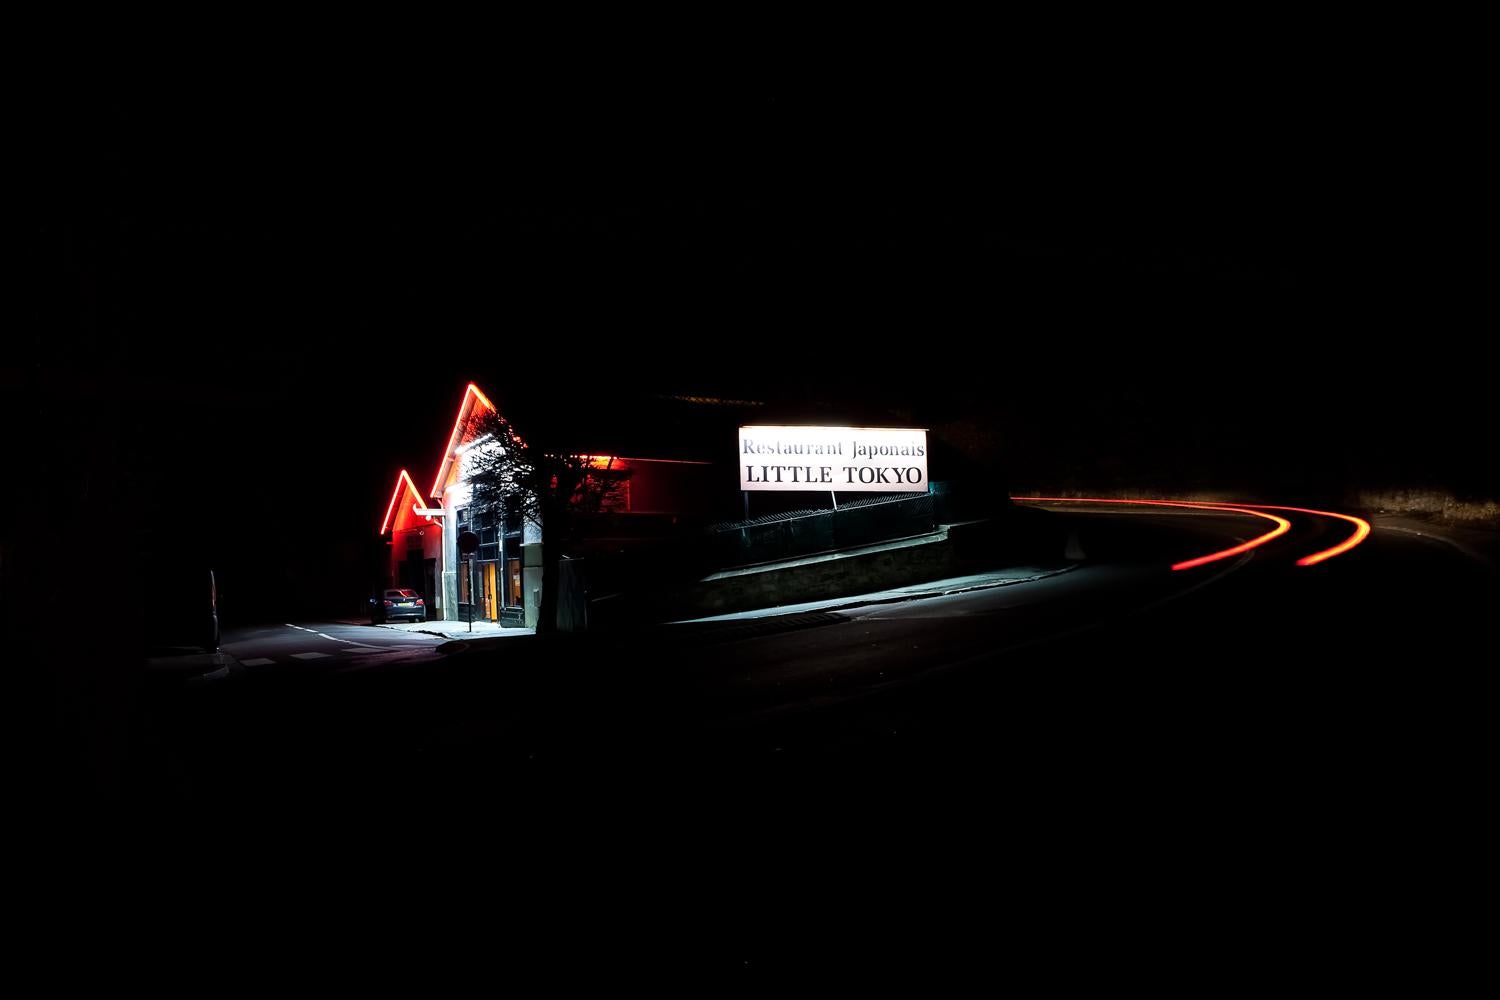 Little Tokyo von Xavier Dumoulin - Zeitgenössische Nachtfotografie, dunkle Straße